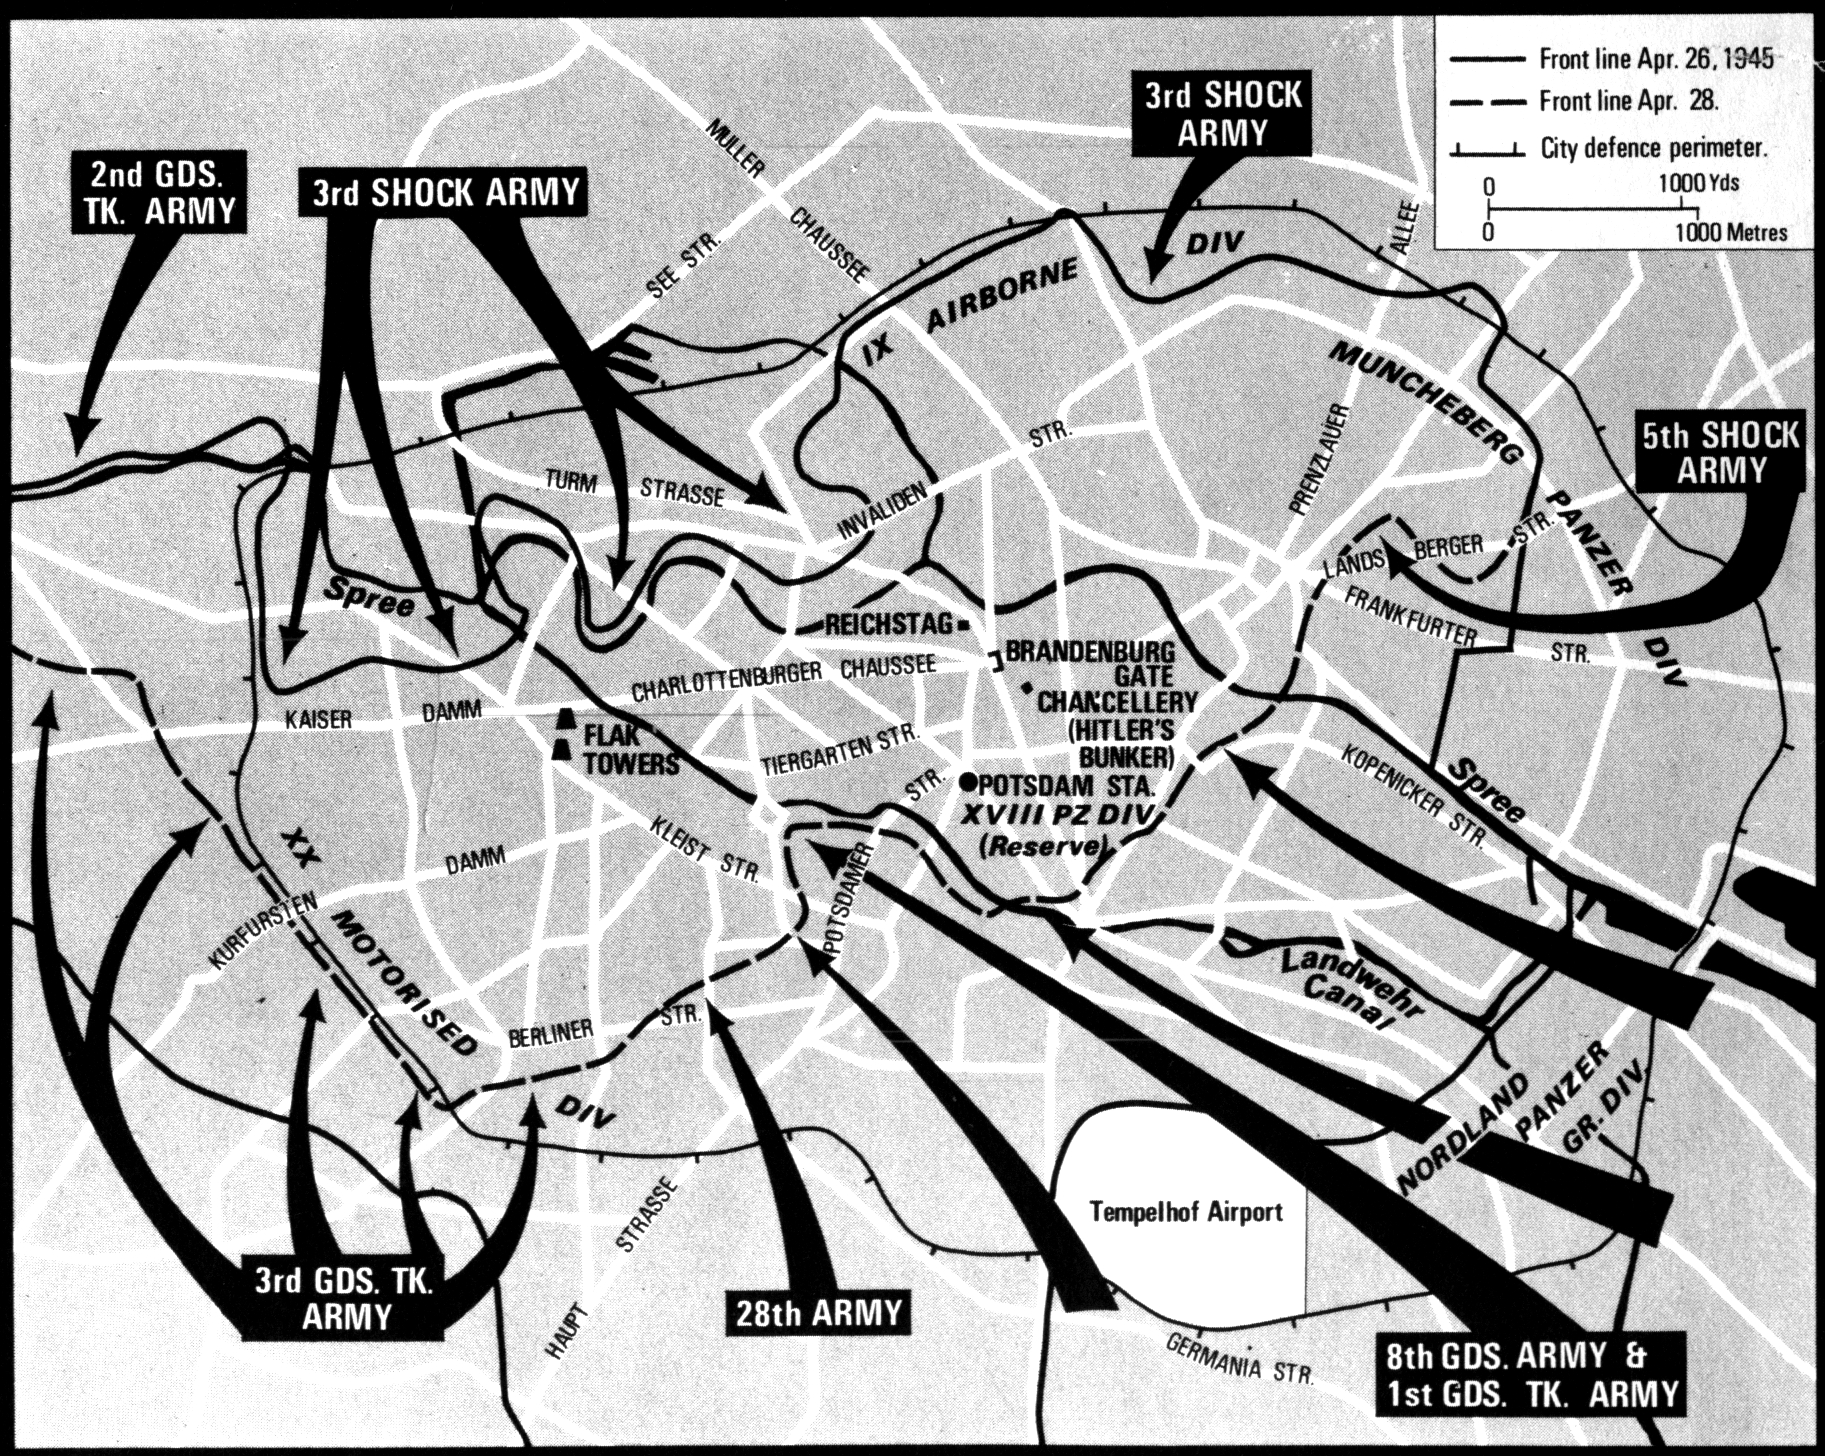 Battle of Berlin, Apr. 26-28, 1945